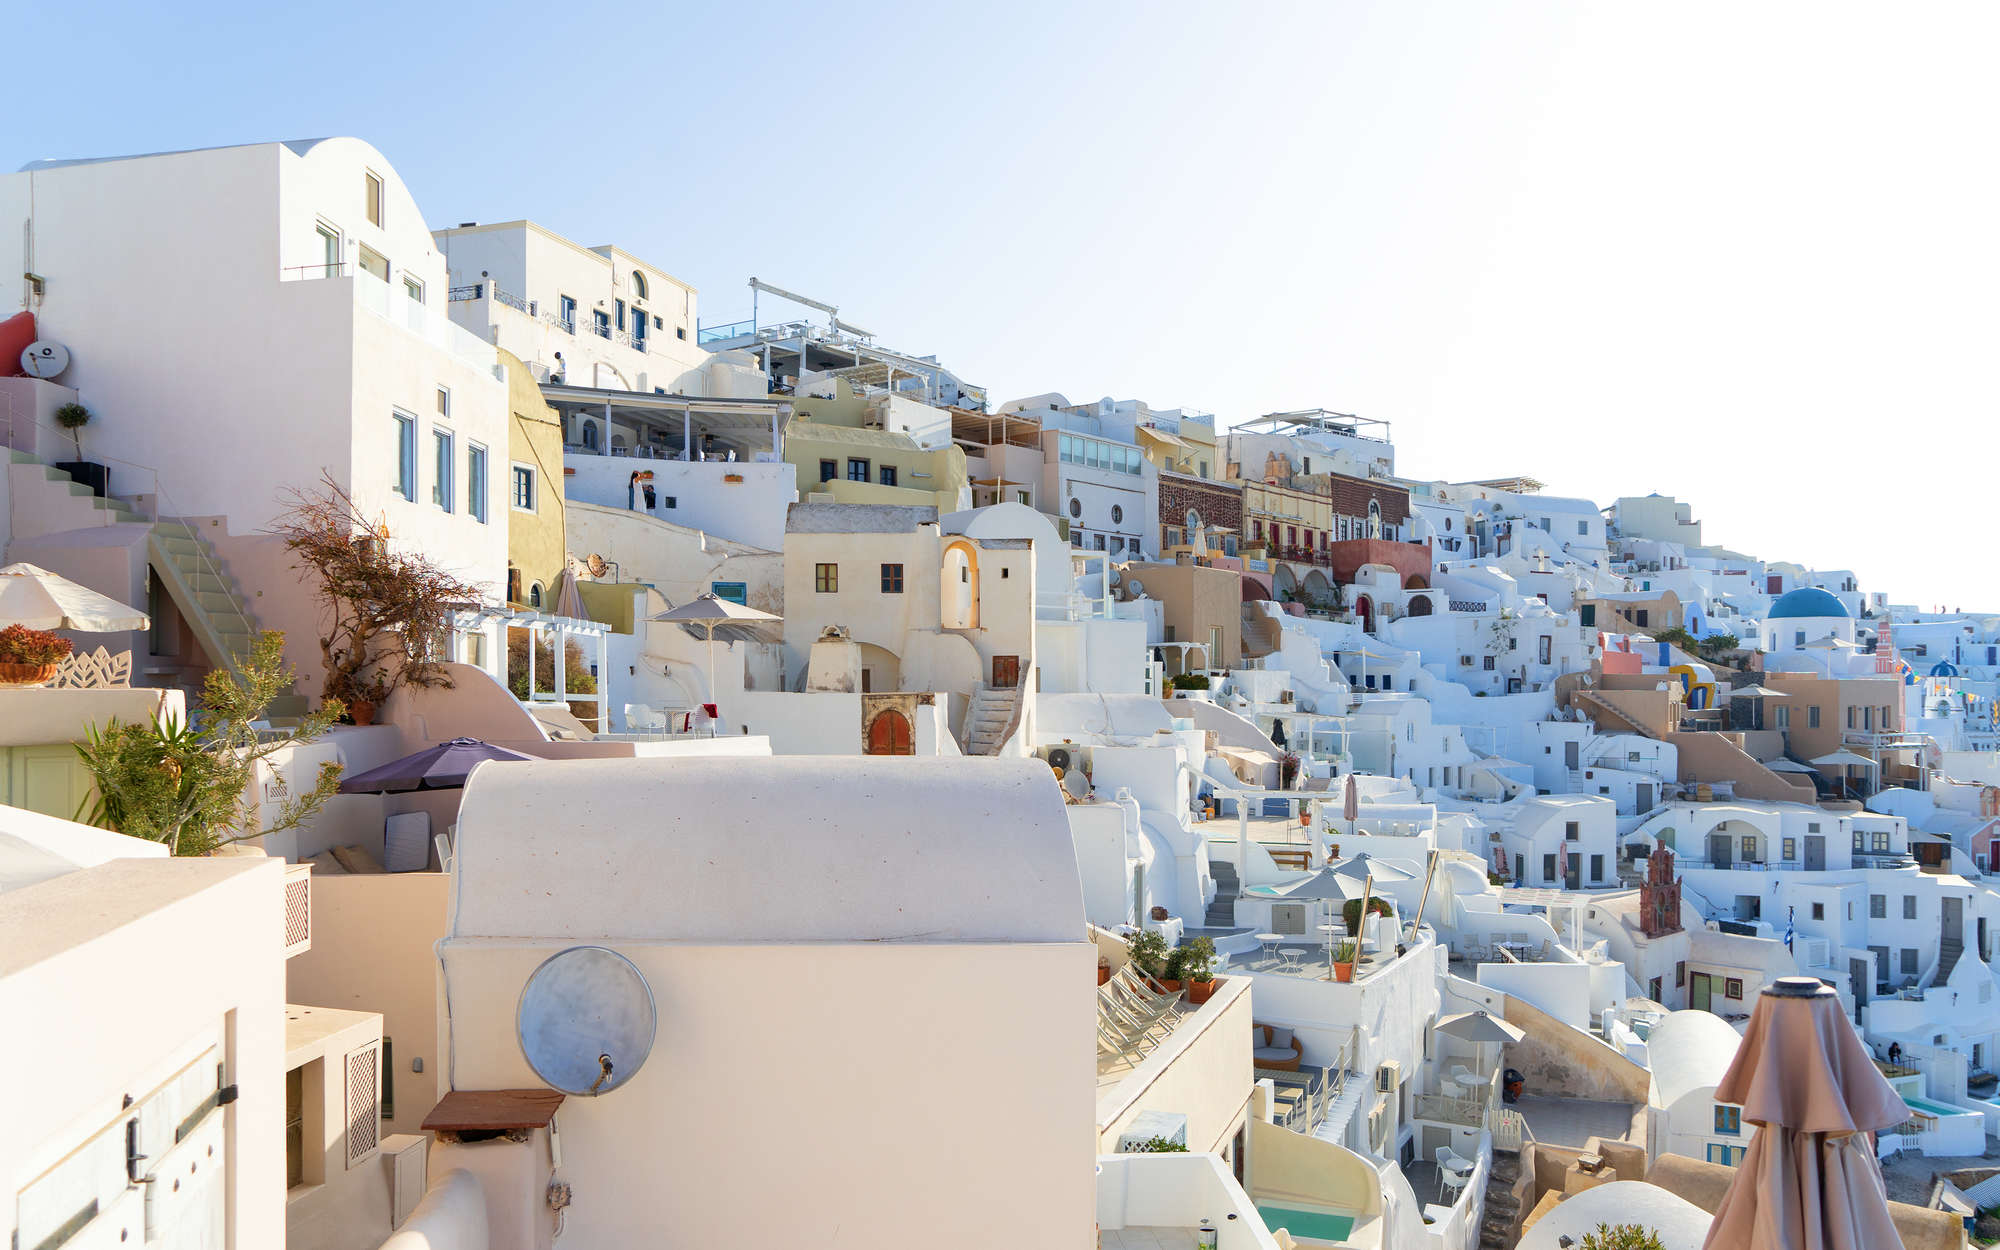             Fototapete Santorini in der Mittagssonne – Struktur Vlies
        